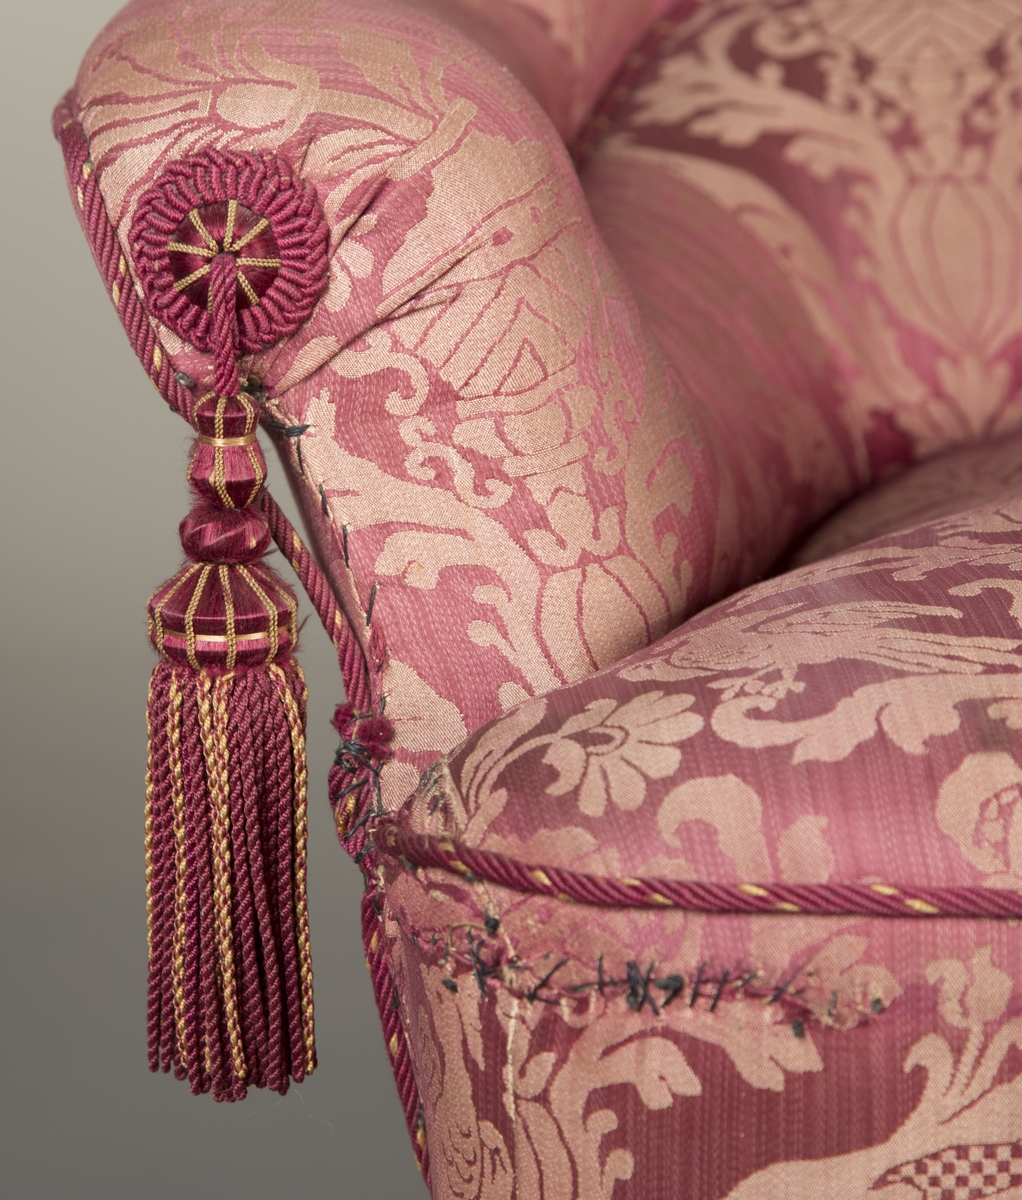 Det symmetriske og gjentakende motivet på stoffet til sofaen er preget av bladverk, blomster, fugler og urner.